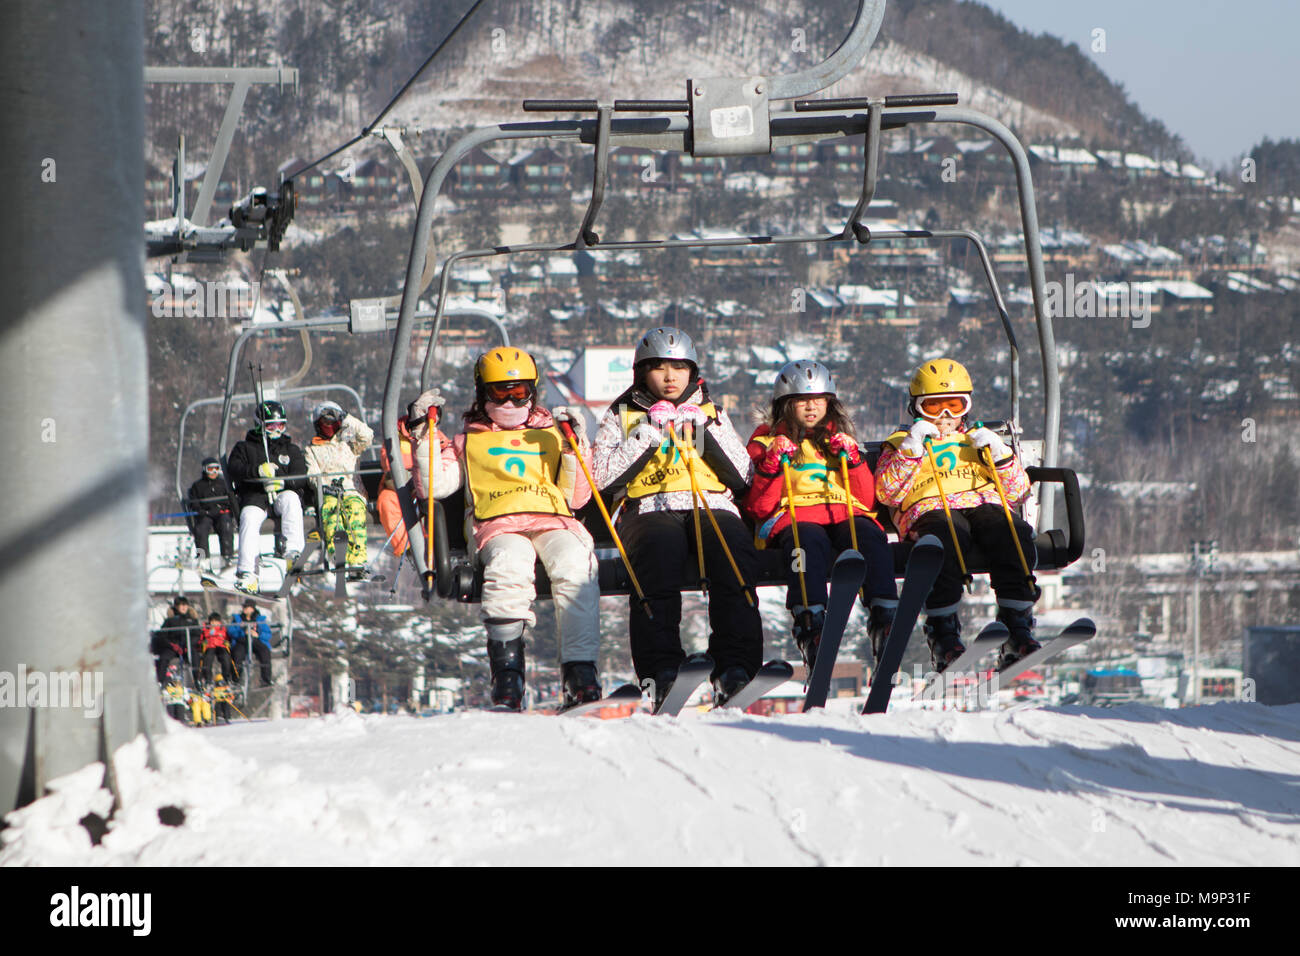 Eine Gruppe von vier Kindern ist bei der Ankunft im Sessellift Bergstation der bunny Neigung an yongpyong. Das Yongpyong-resort (Dragon Valley) Ski Resort ist ein Skigebiet in Südkorea, in Daegwallyeong-myeon, Pyeongchang, Gangwon-do. Es ist die größte Ski- und Snowboard Resorts in Korea. Das Yongpyong-resort bewirten die technischen Ski alpin Veranstaltungen für die olympischen Winterspiele und Paralympics 2018 in Pyeongchang. Einige Szenen der 2002 Korean Broadcasting System drama Winter Sonata wurden im Resort gedreht. Stockfoto